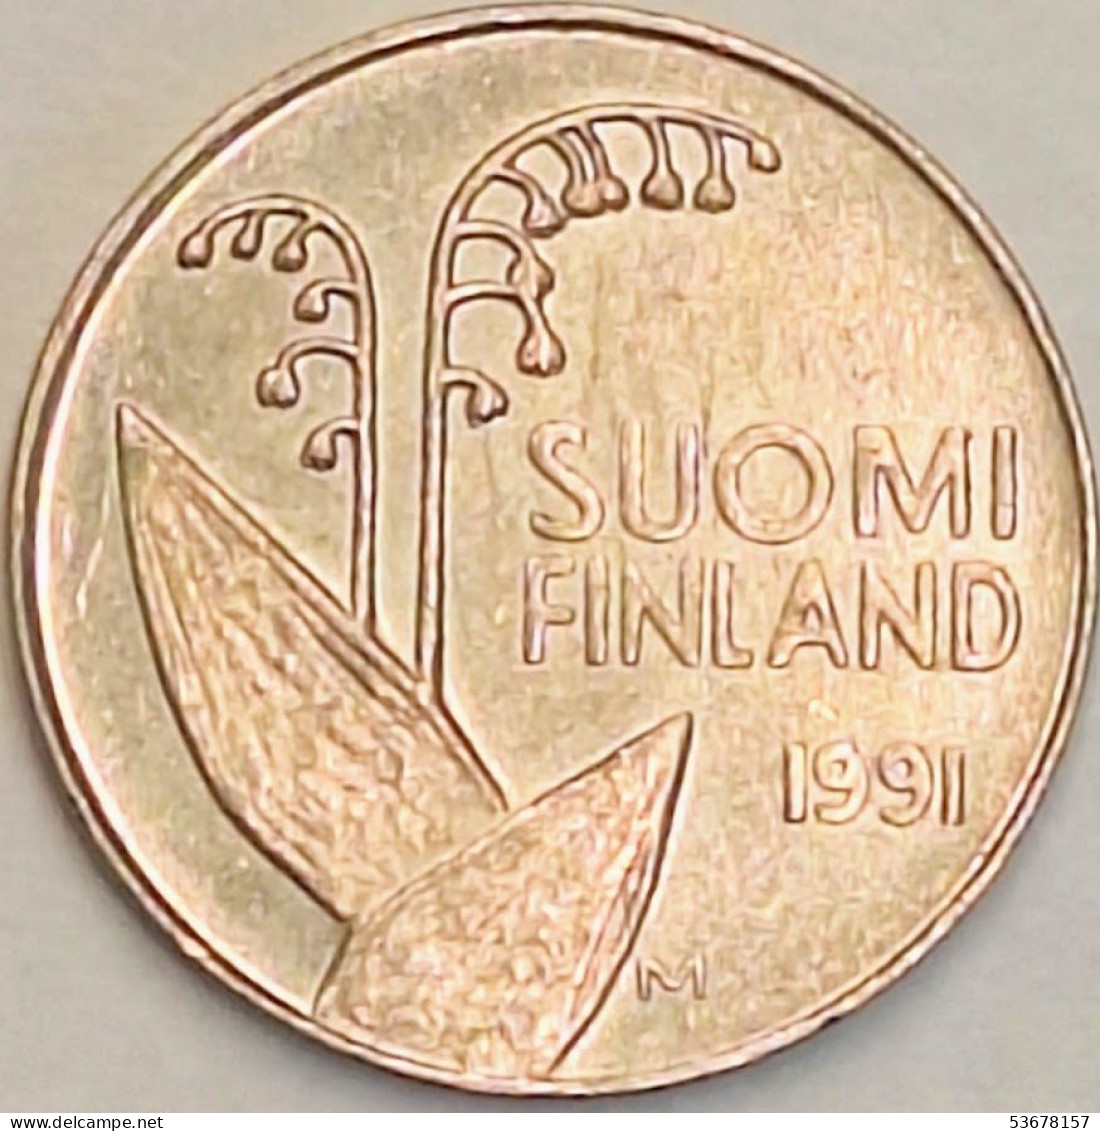 Finland - 10 Pennia 1991 M, KM# 65 (#3923) - Finlandia